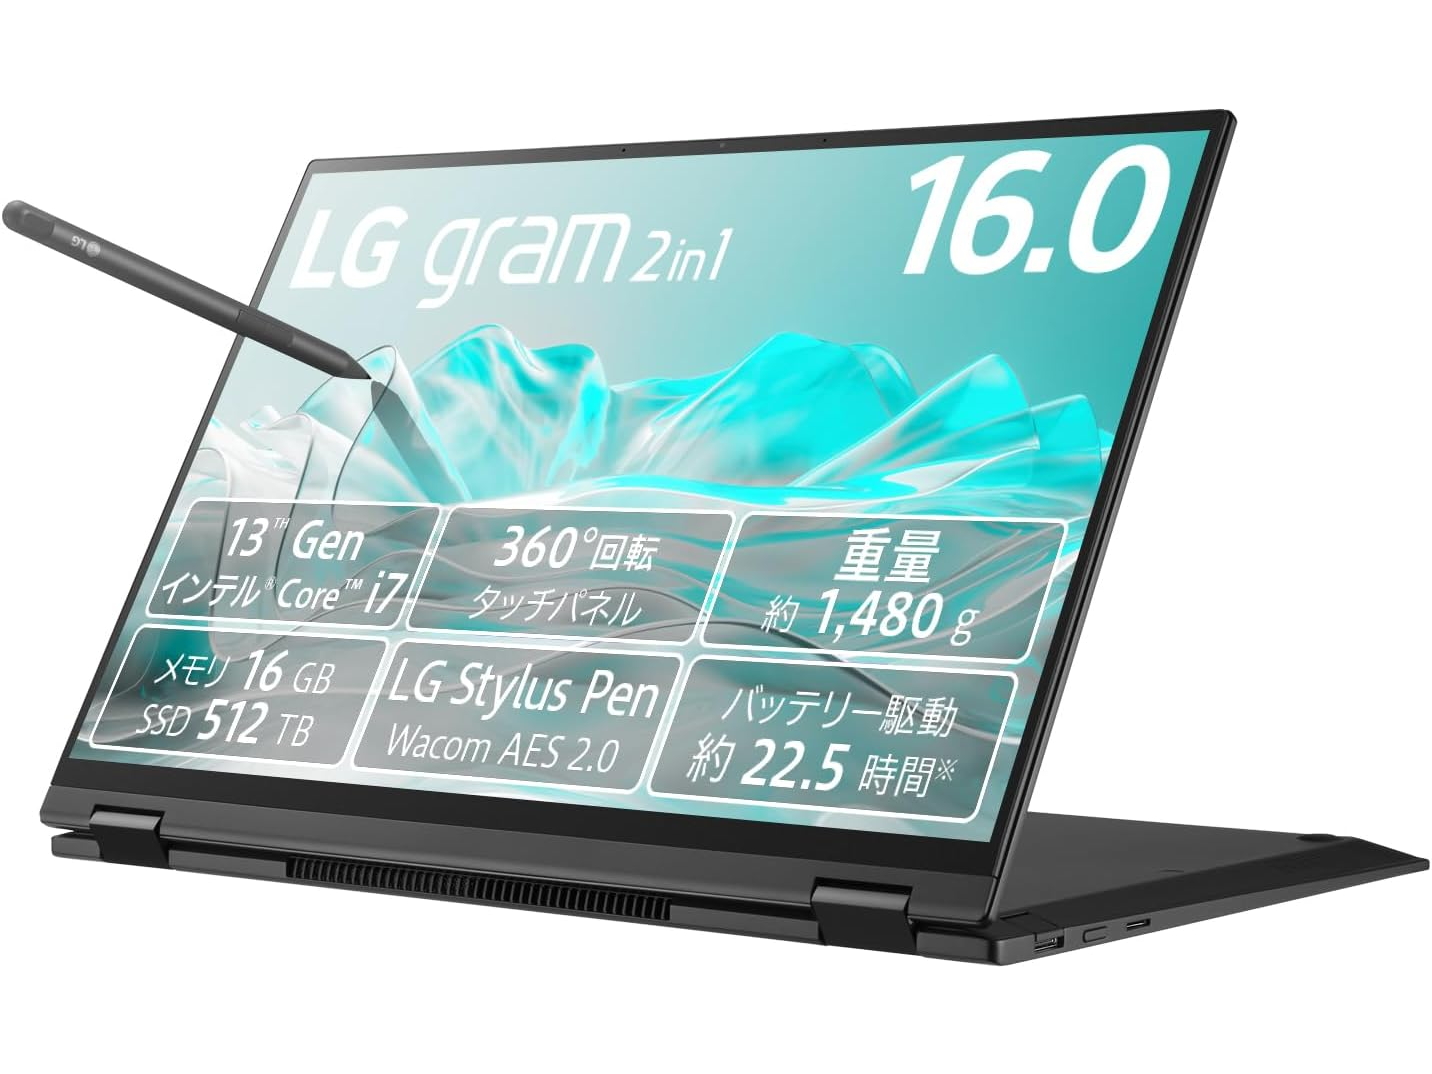 本日みつけたお買い得品】第13世代Core i7搭載の16型「LG gram 2in1